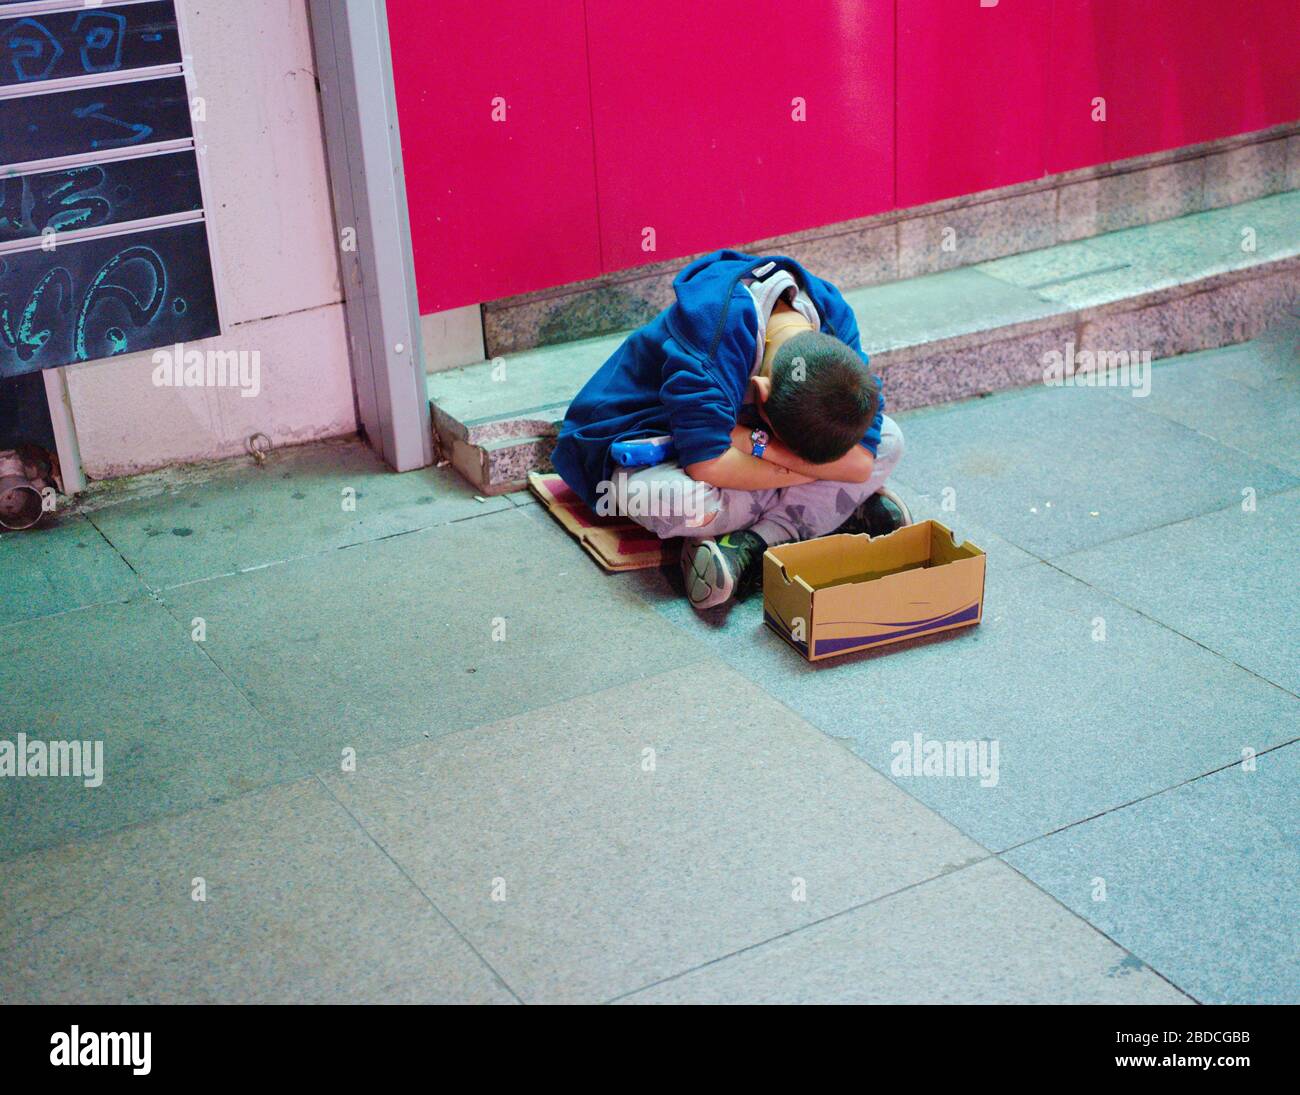 Bettlerjunge, der Junge, der nachts bei kaltem Wetter auf der Straße um Geld bettelte Stockfoto